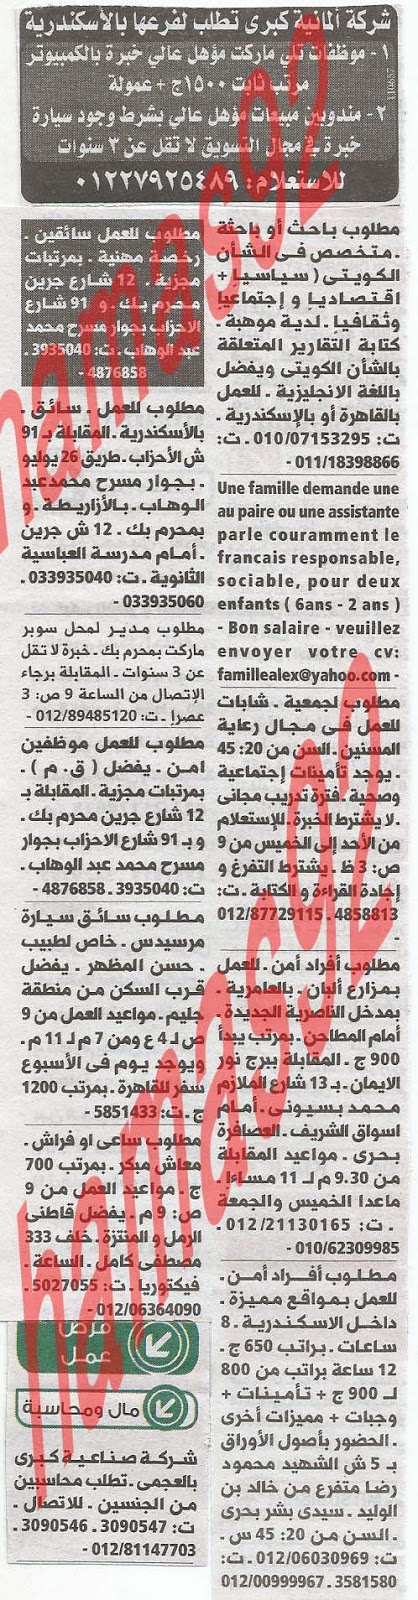 وظائف جريدة الوسيط الاسكندرية 23/7/2013 ( 14 رمضان) %D9%88+%D8%B3+%D8%B3+3